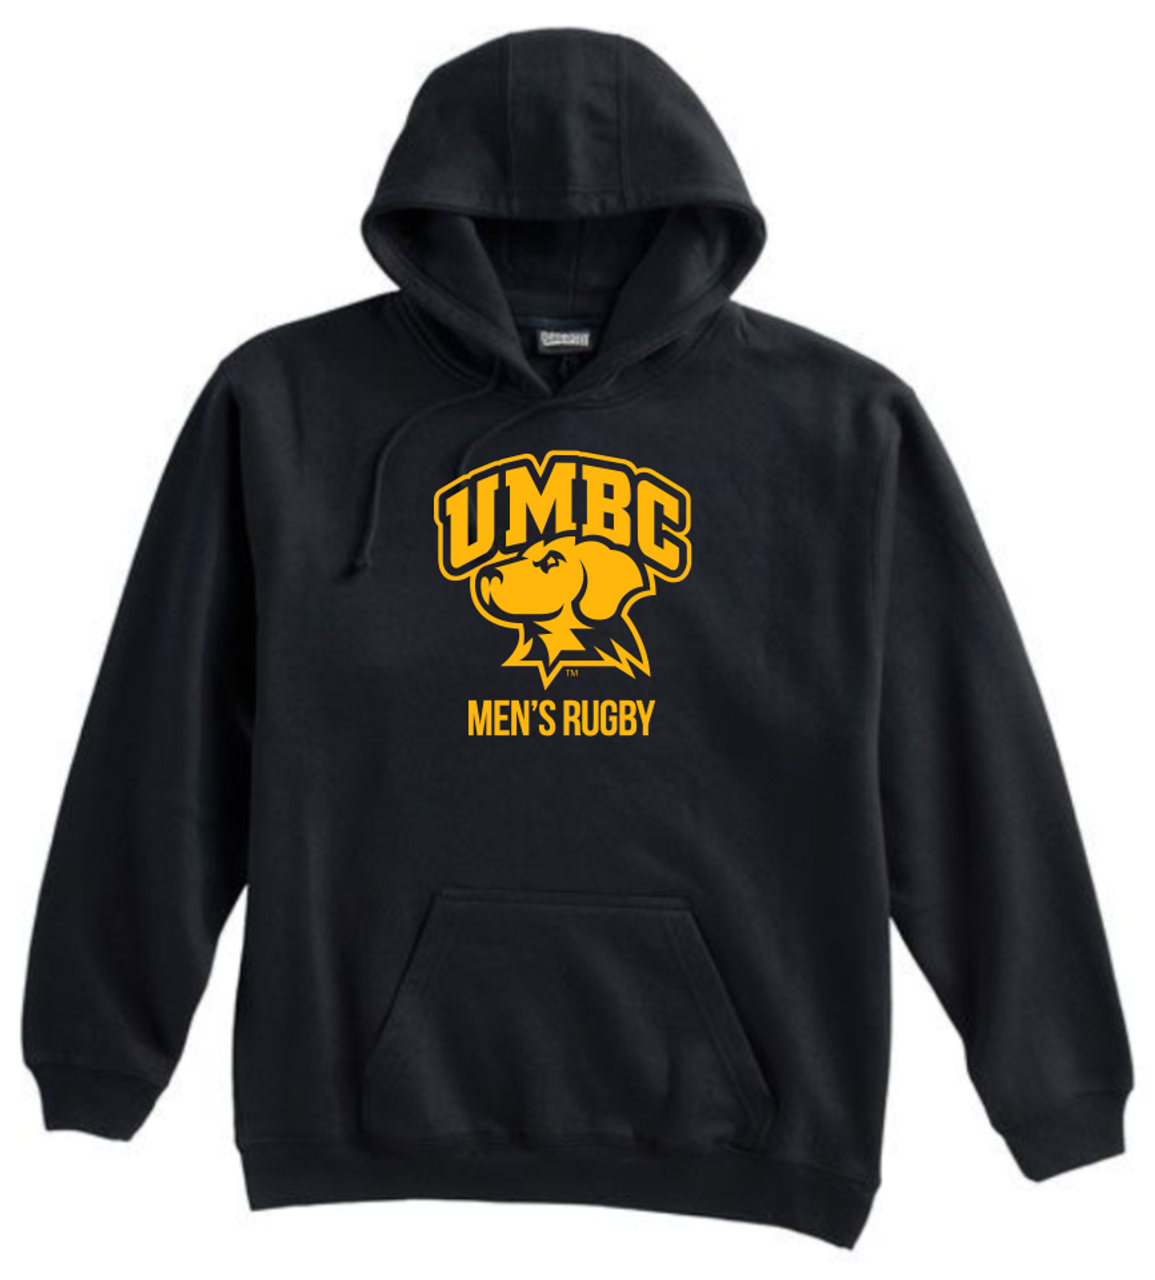 UMBC Men's Rugby Hoodie w/ Retriever